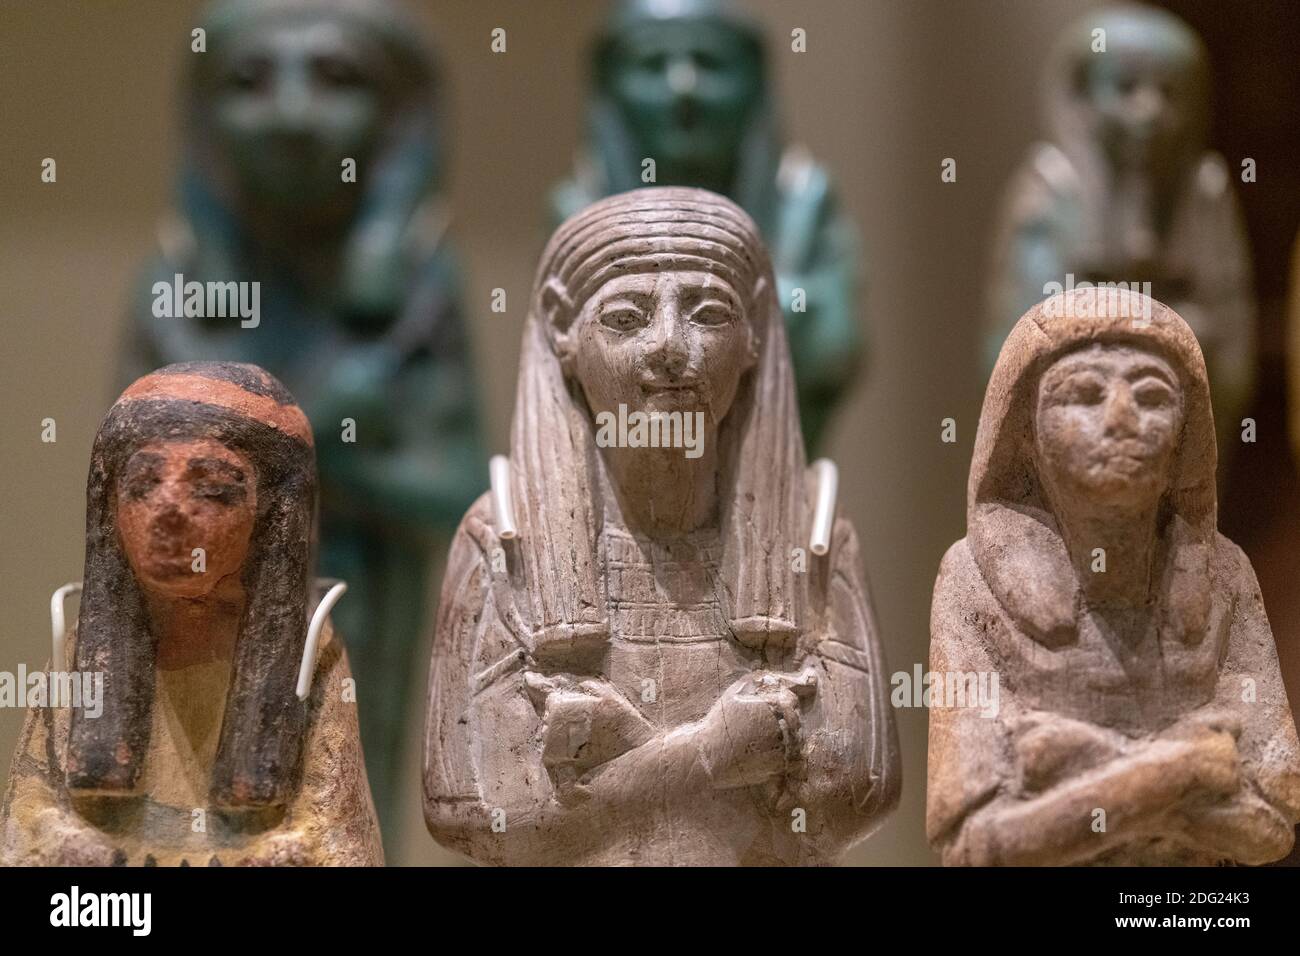 Shawabtis figuras mágicas. El artículo se ve en la exposición del Museo Real de Ontario llamada "las momias egipcias: Vidas antiguas. Nuevos descubrimientos" Foto de stock